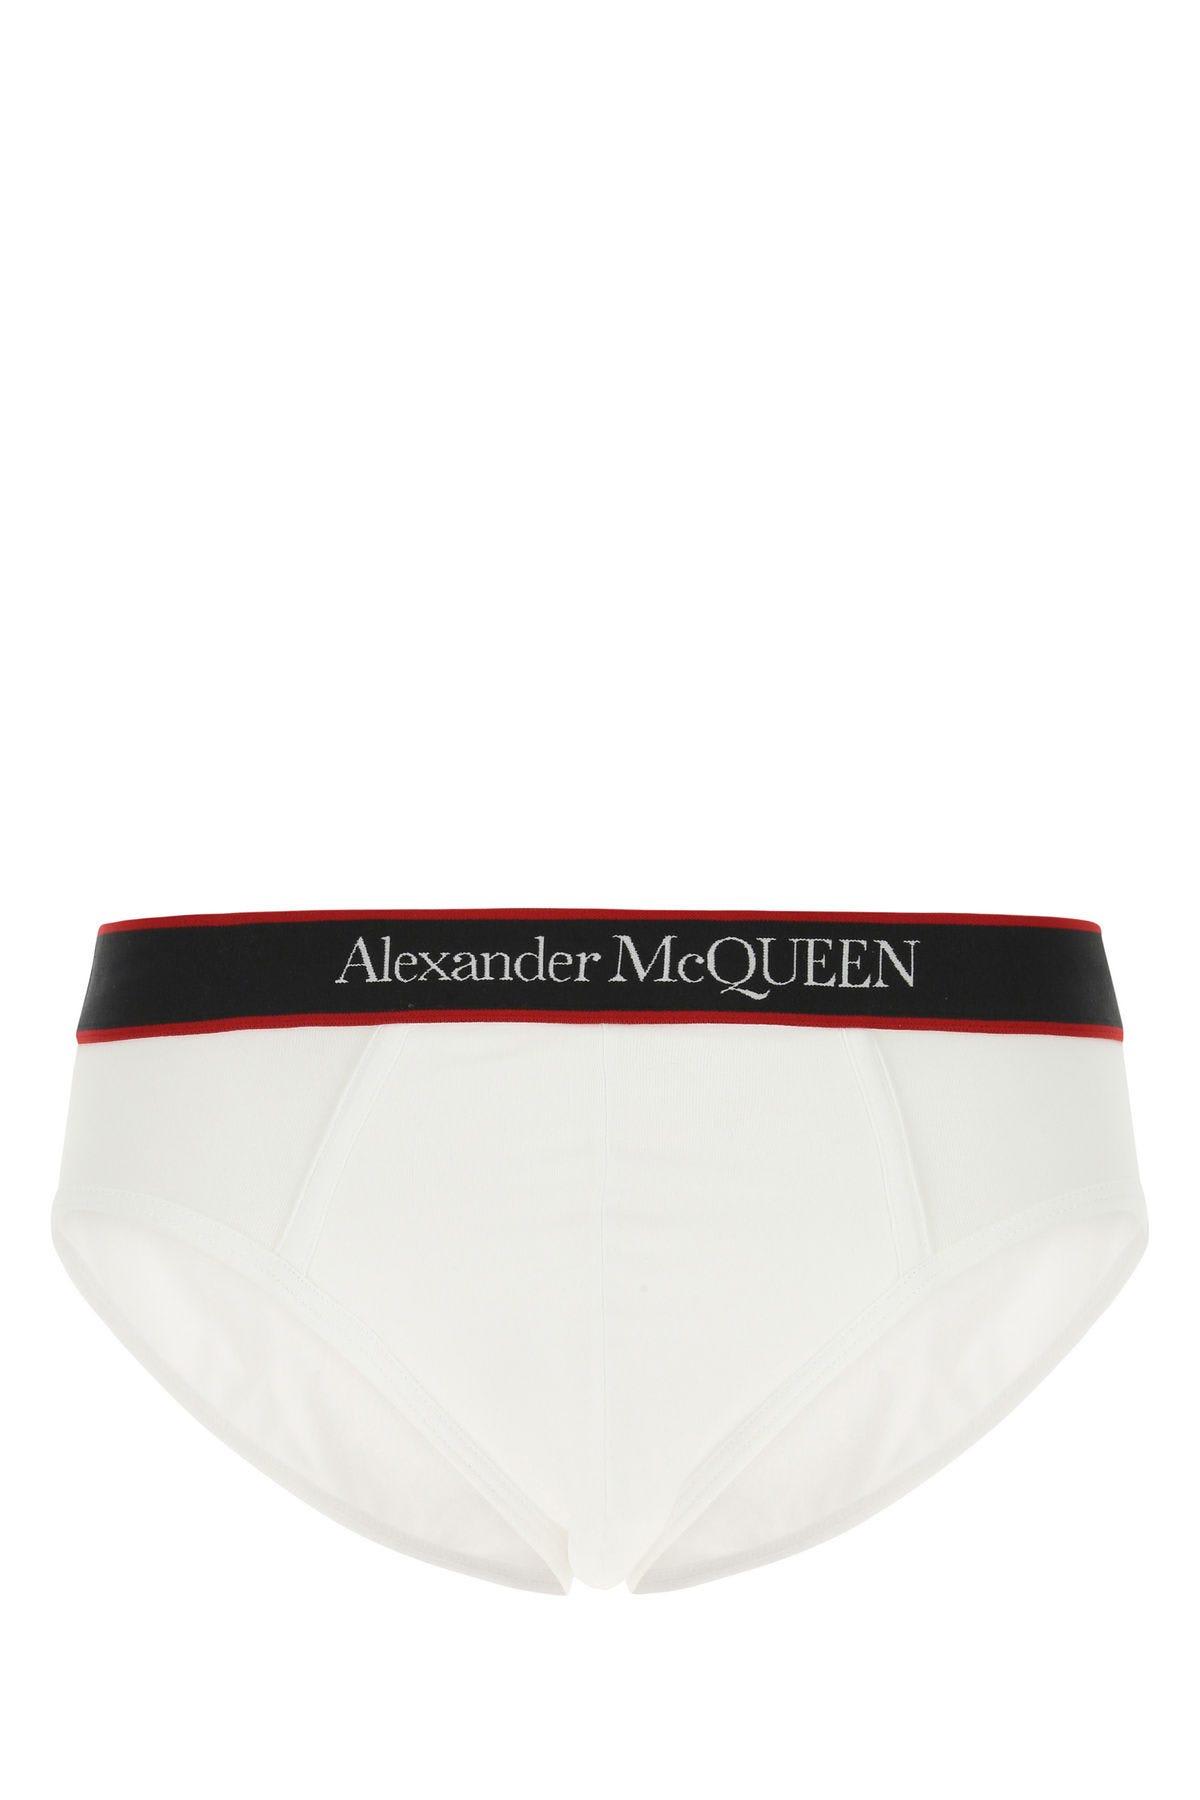 Alexander McQueen White Stretch Cotton Slip